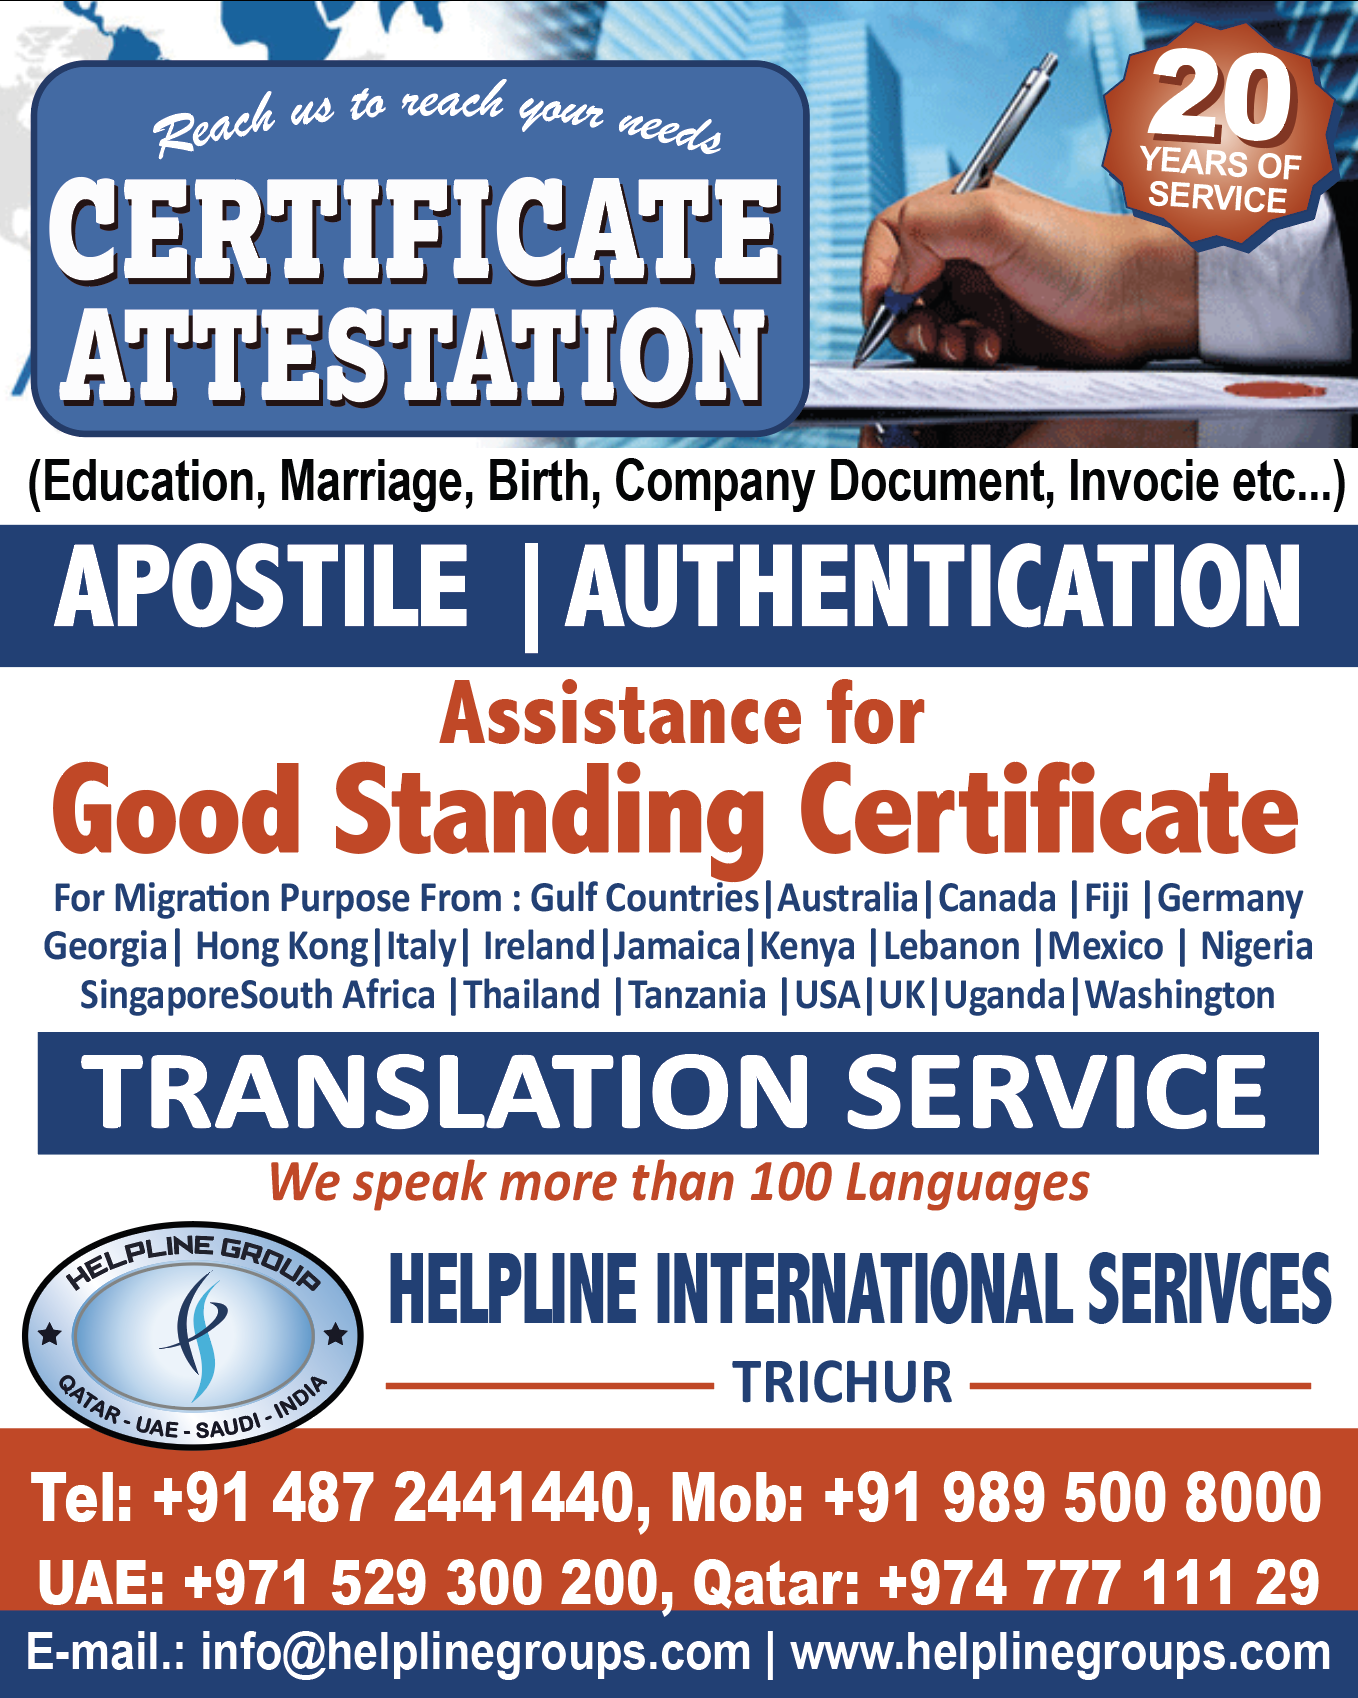 Helpline international services trichur